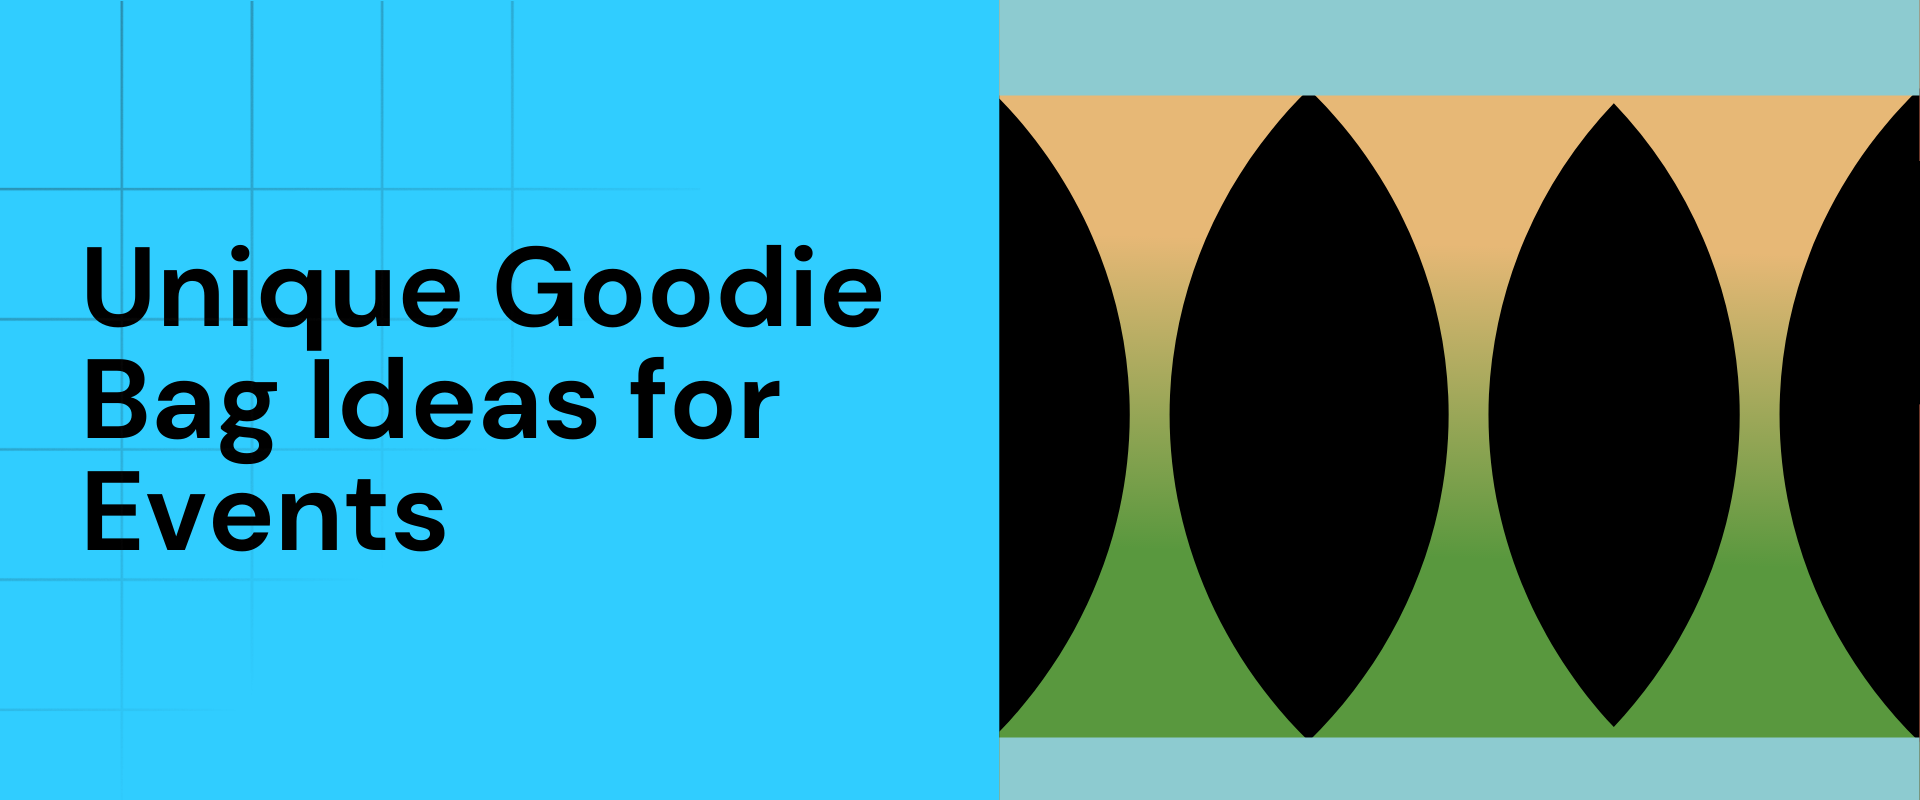 15 Unique Goodie Bag Ideas for Events